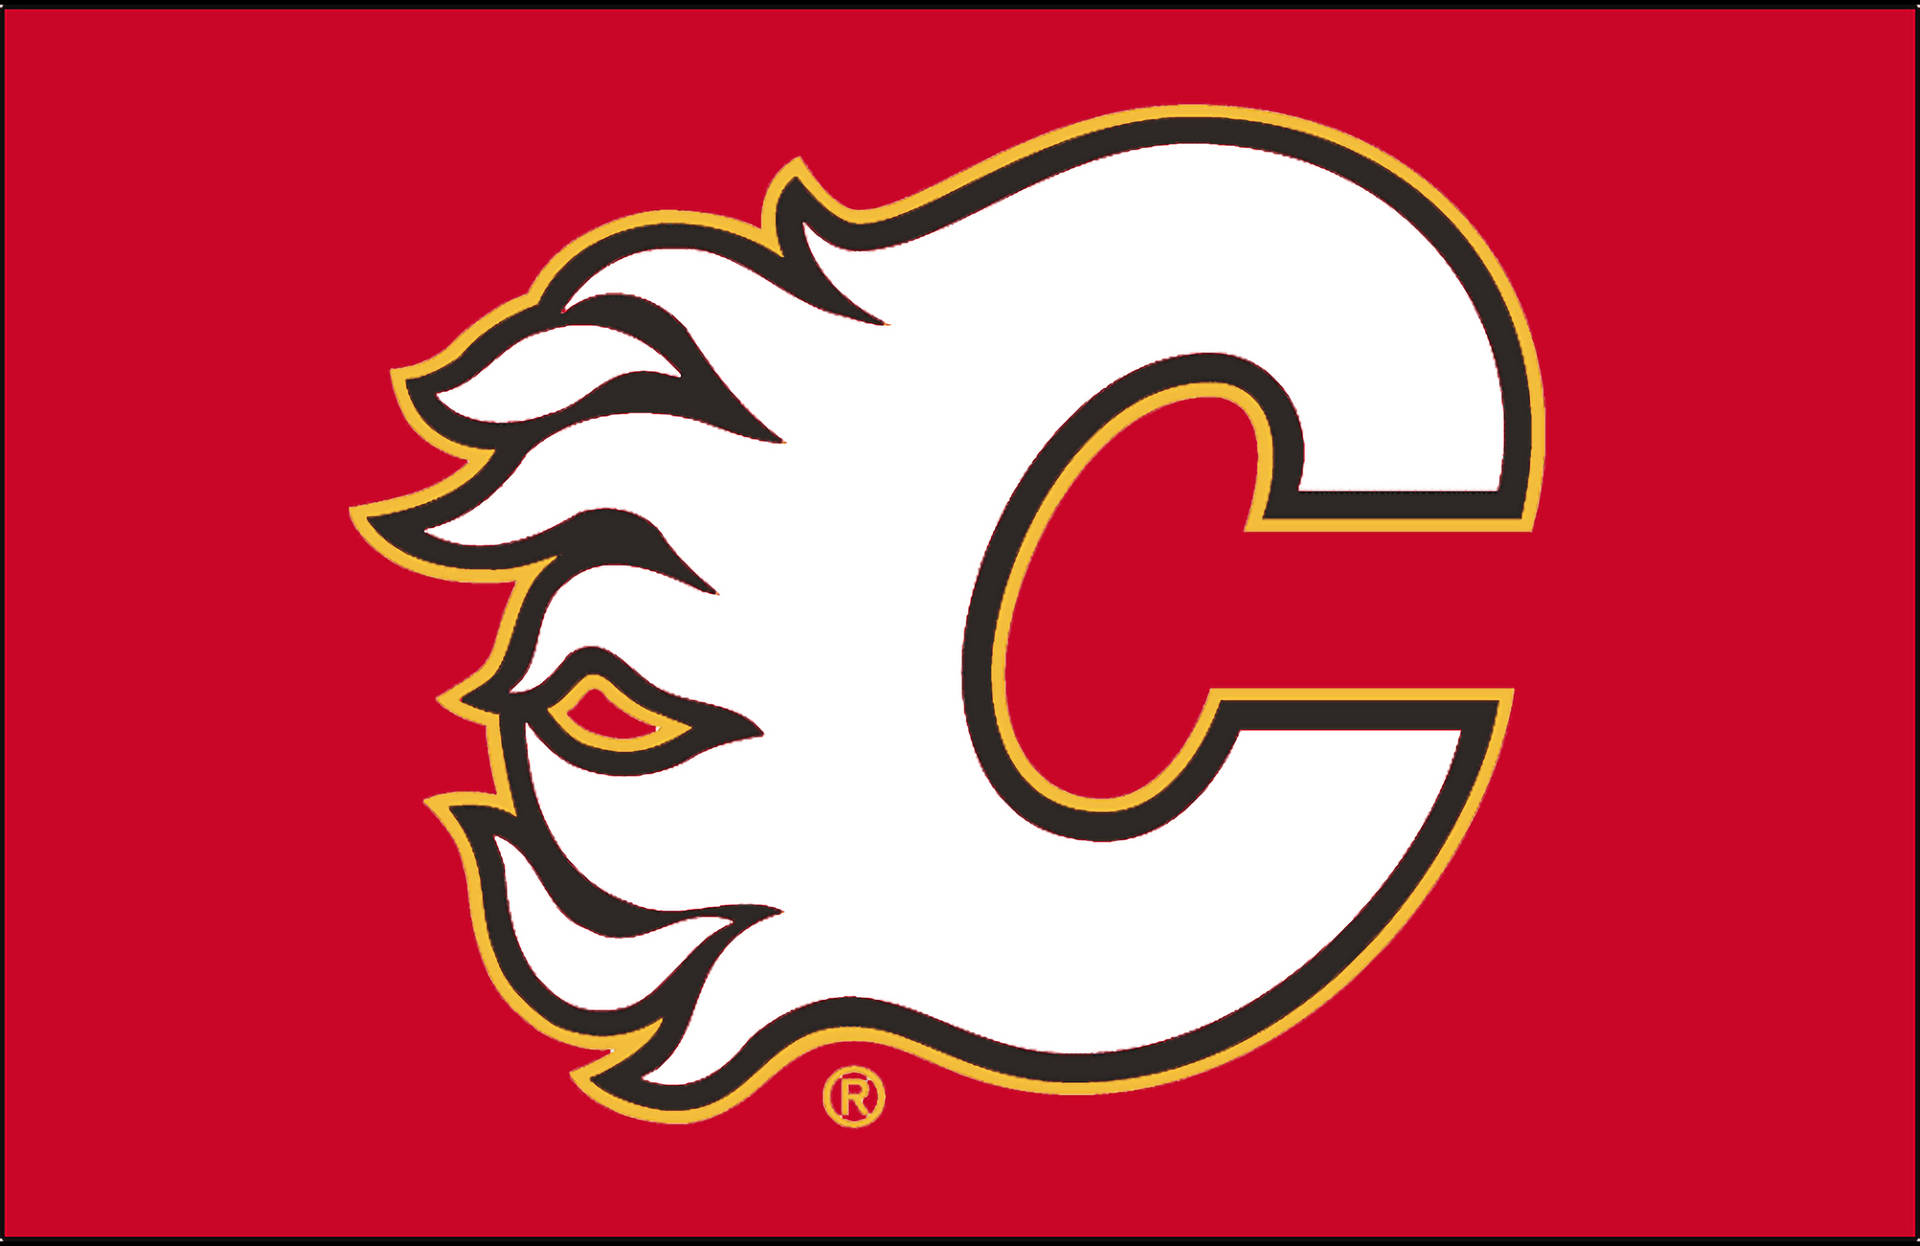 Logotipodel Equipo De Hockey Sobre Hielo Calgary Flames. Fondo de pantalla